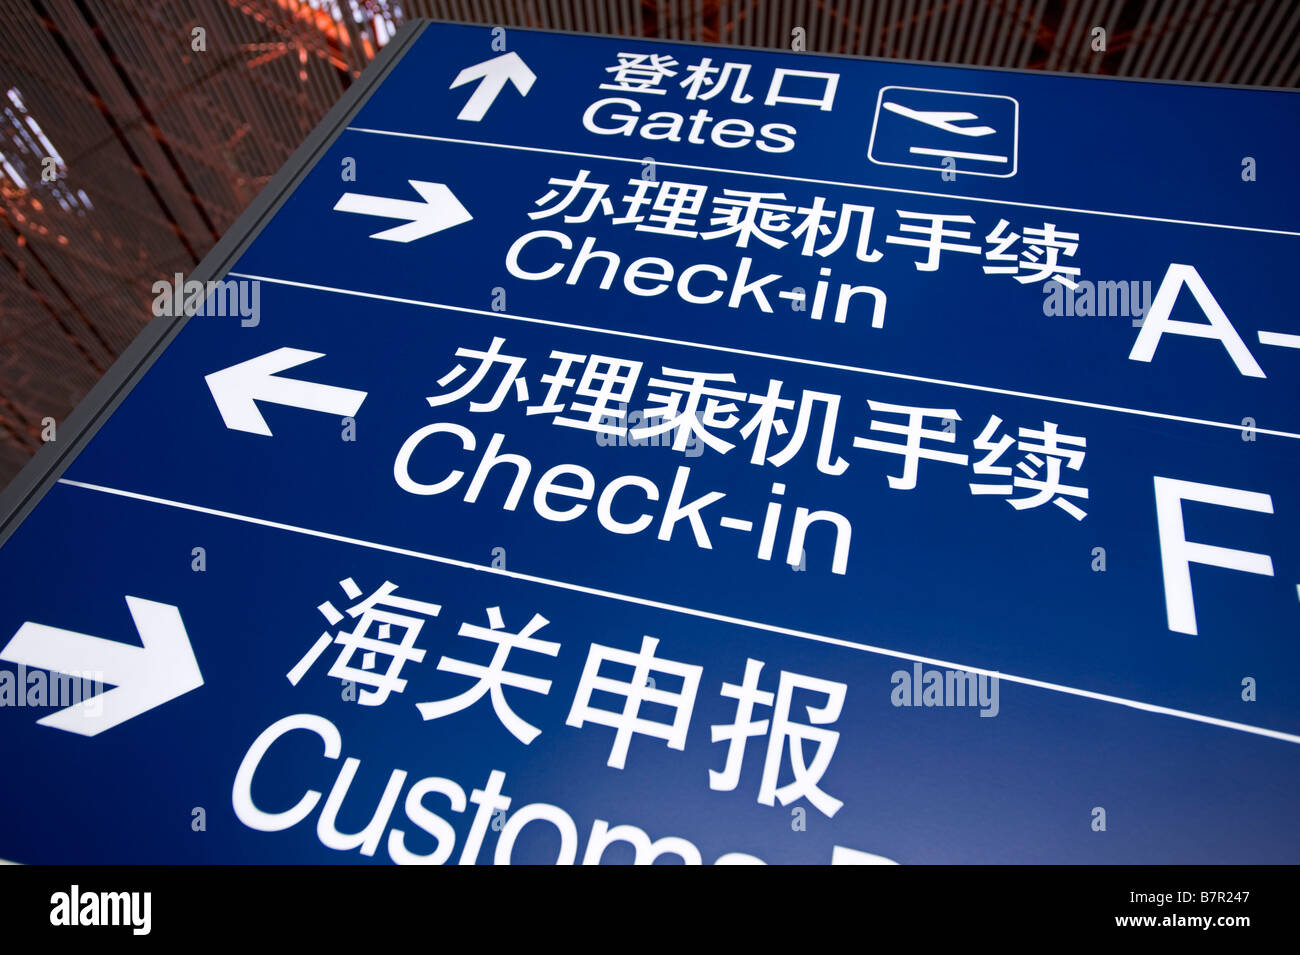 Información del aeropuerto dirección firmar en China mostrando la ubicación de las puertas de embarque y verificar en 2009 Foto de stock